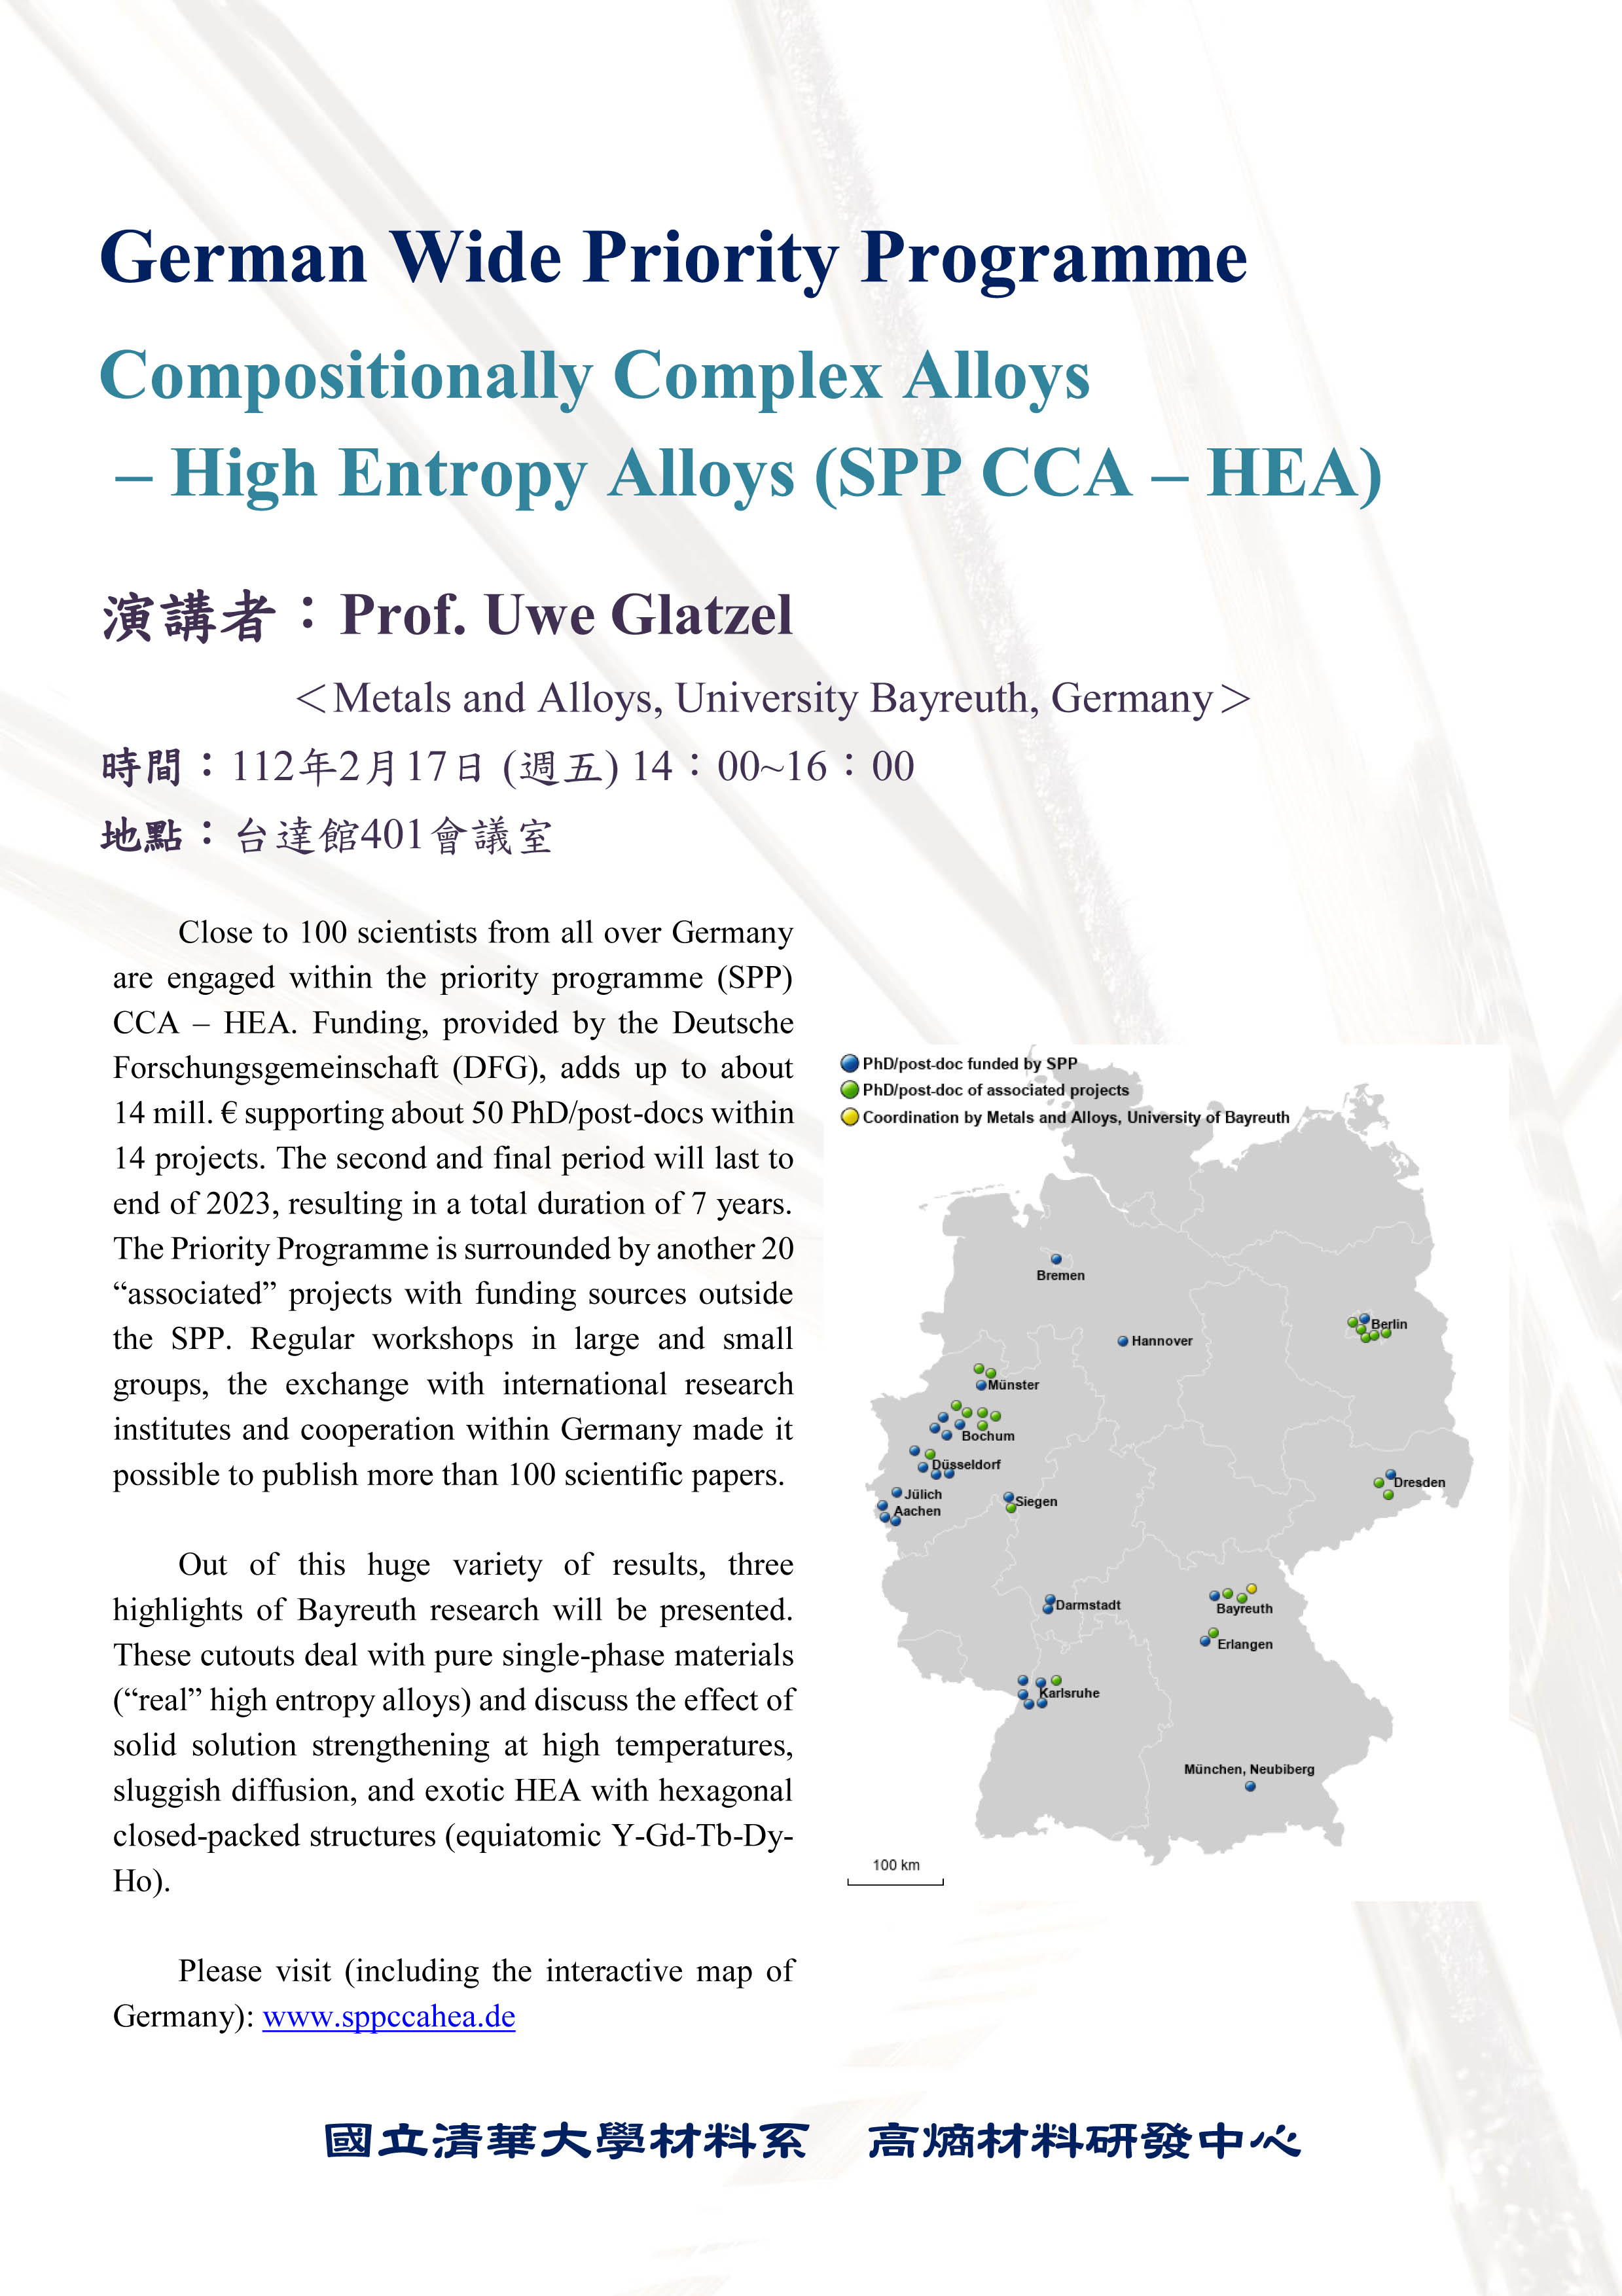 Prof. Uwe Glatzel-Compositionally Complex Alloys – High Entropy Alloys (SPP CCA – HEA)